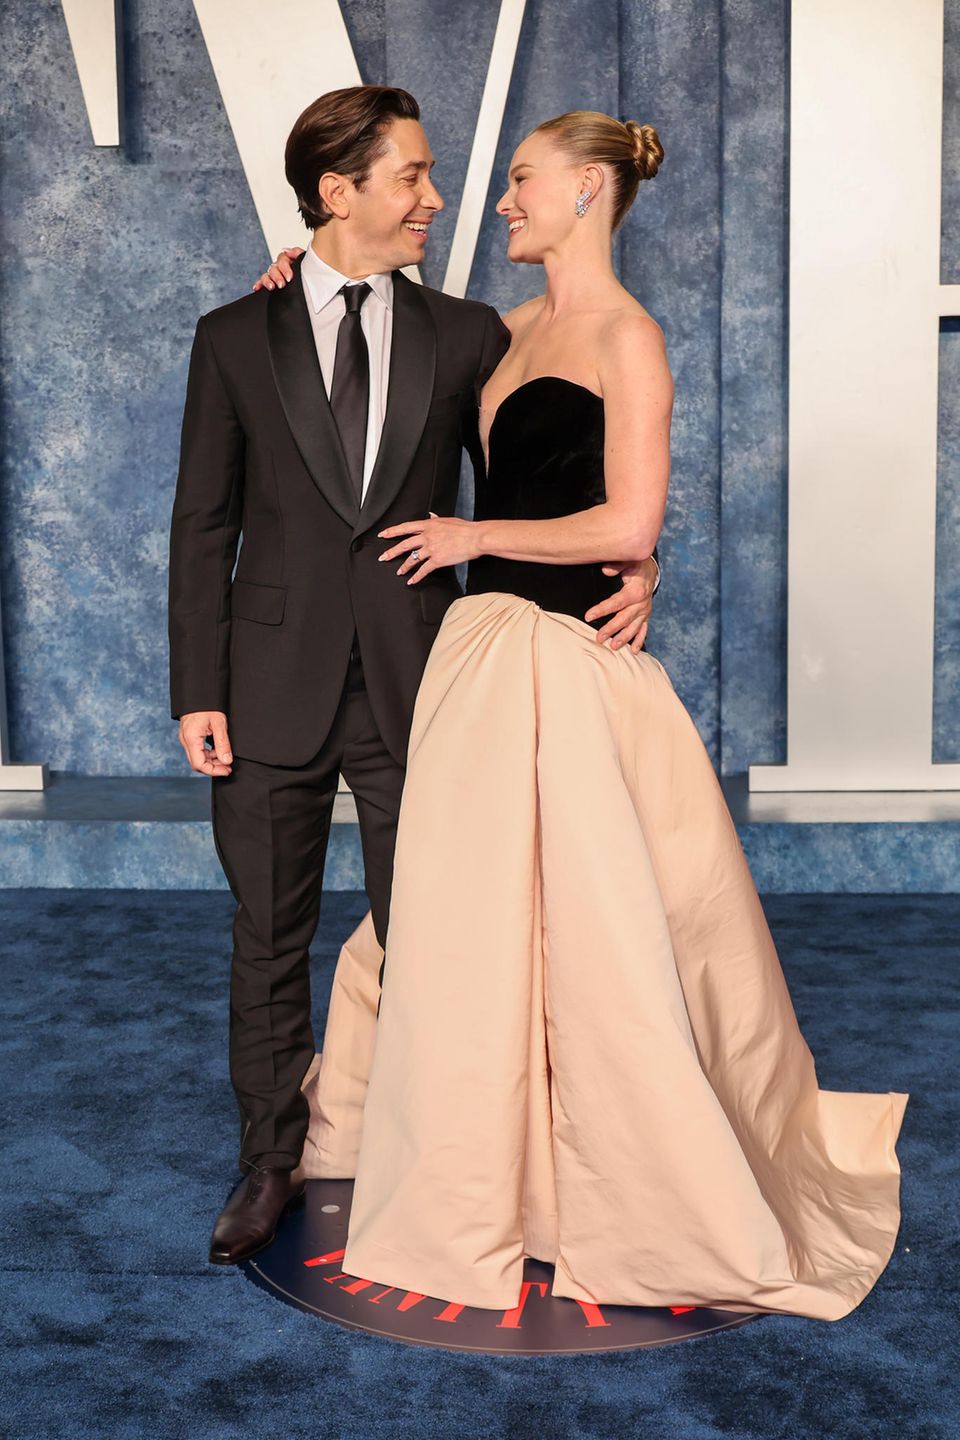 Frisch verlobt und über beide Ohren strahlend zeigen sich Justin Long und Kate Bosworth bei der Party von Vanity Fair.